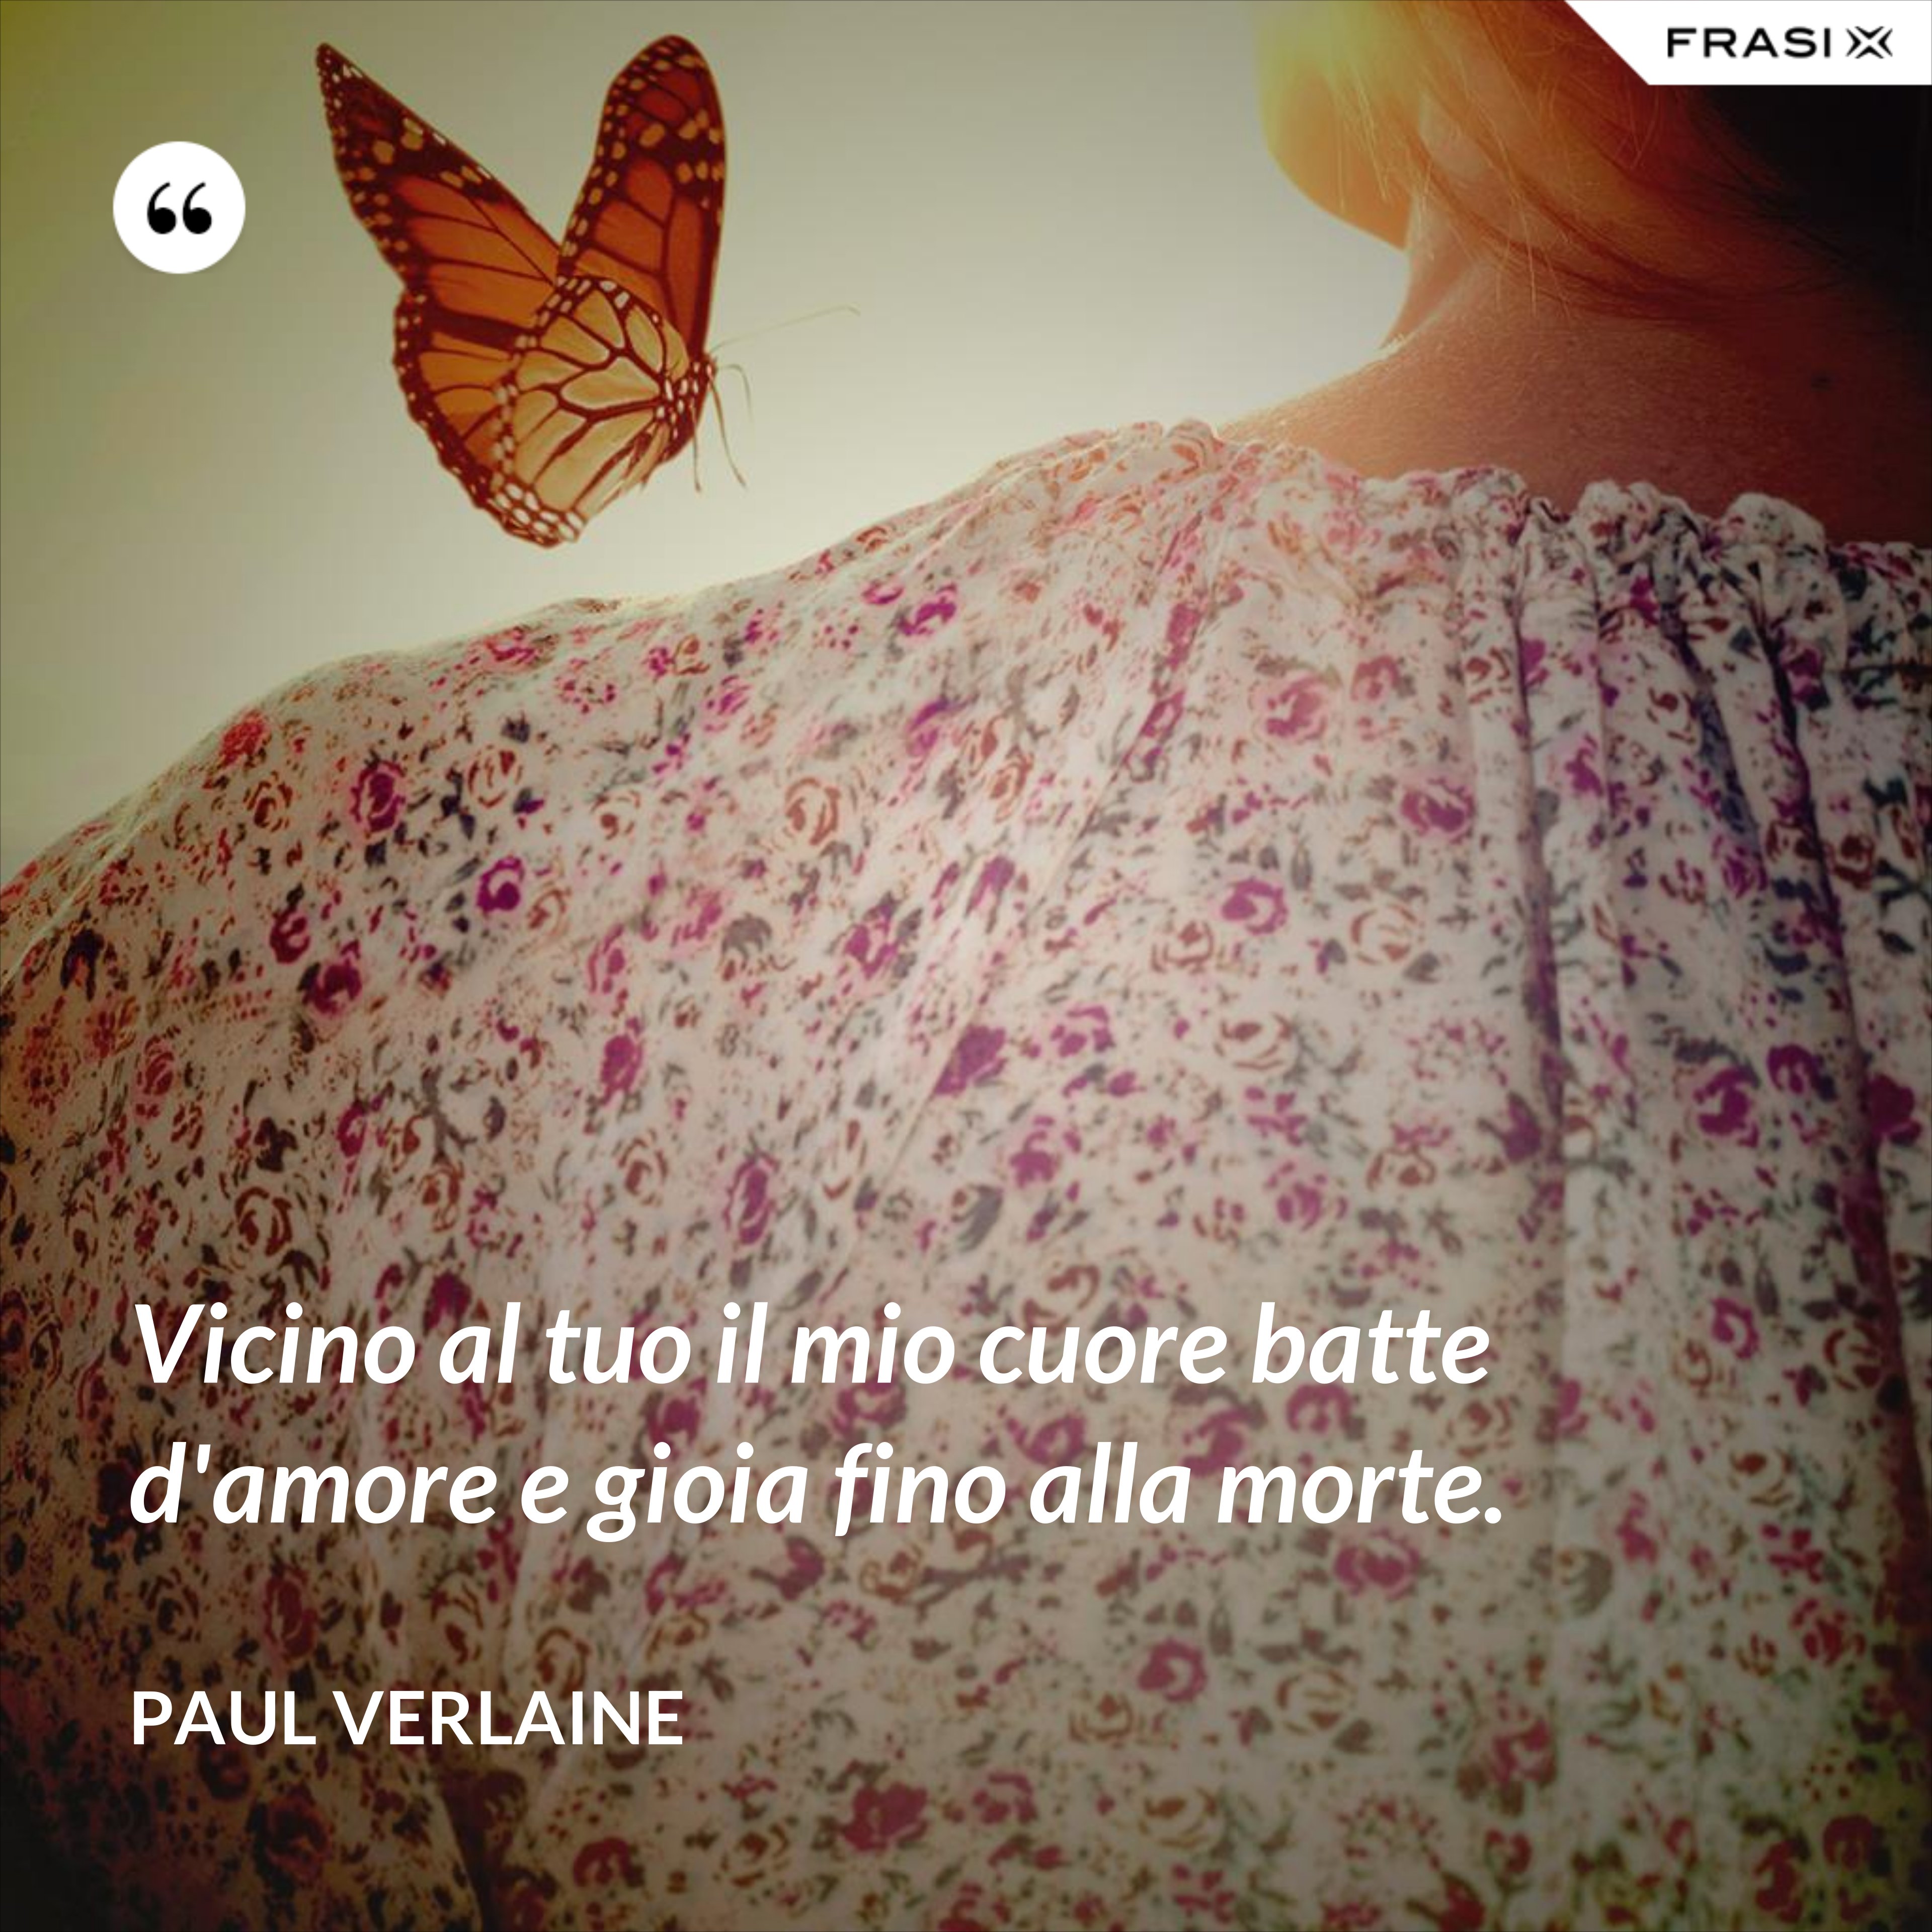 Vicino al tuo il mio cuore batte d'amore e gioia fino alla morte. - Paul Verlaine